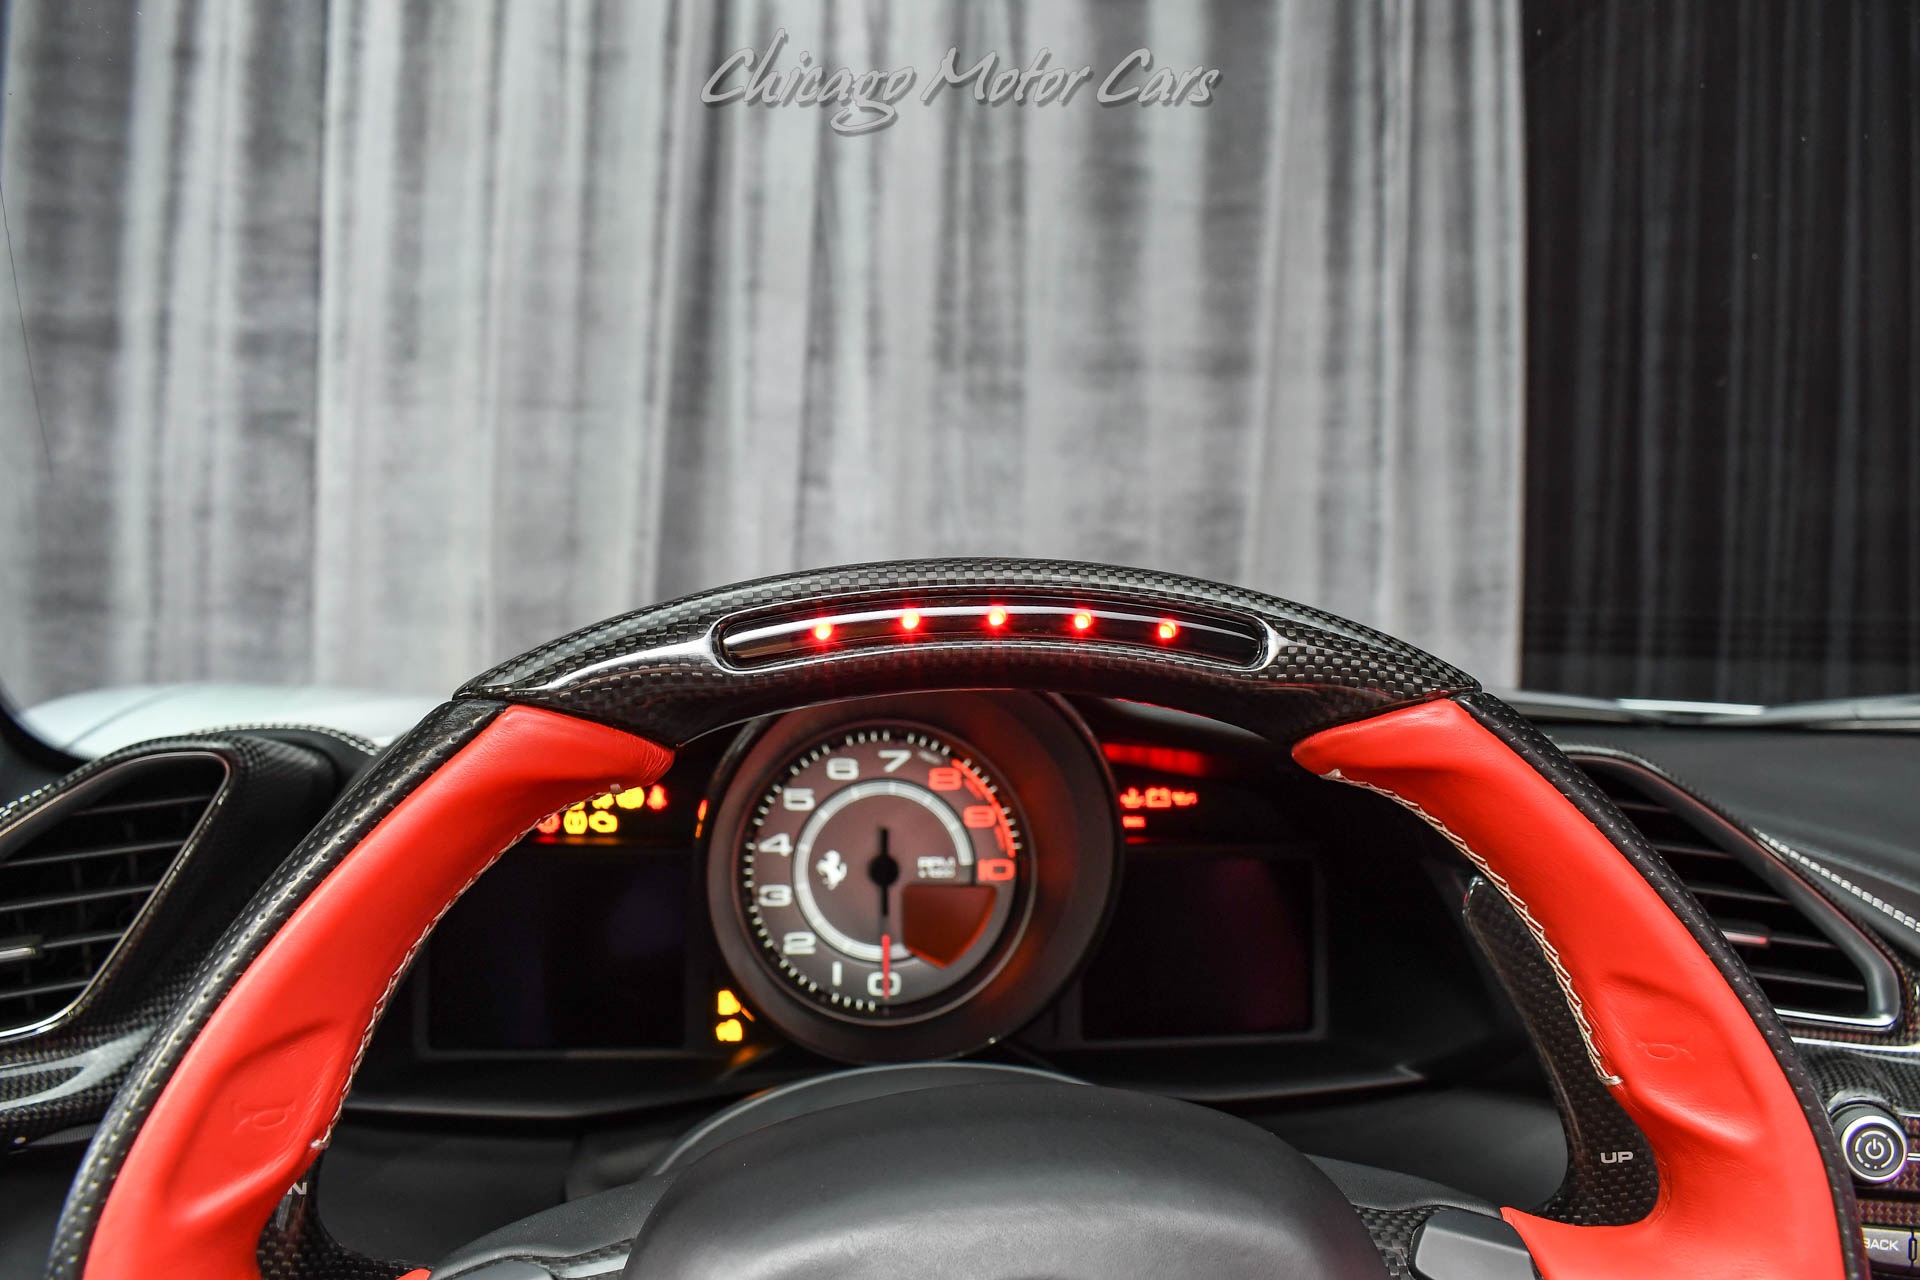 Used-2017-Ferrari-488-Spider-400K-MSRP-Carbon-Fiber-Everything-40k-in-Upgrades-Loaded